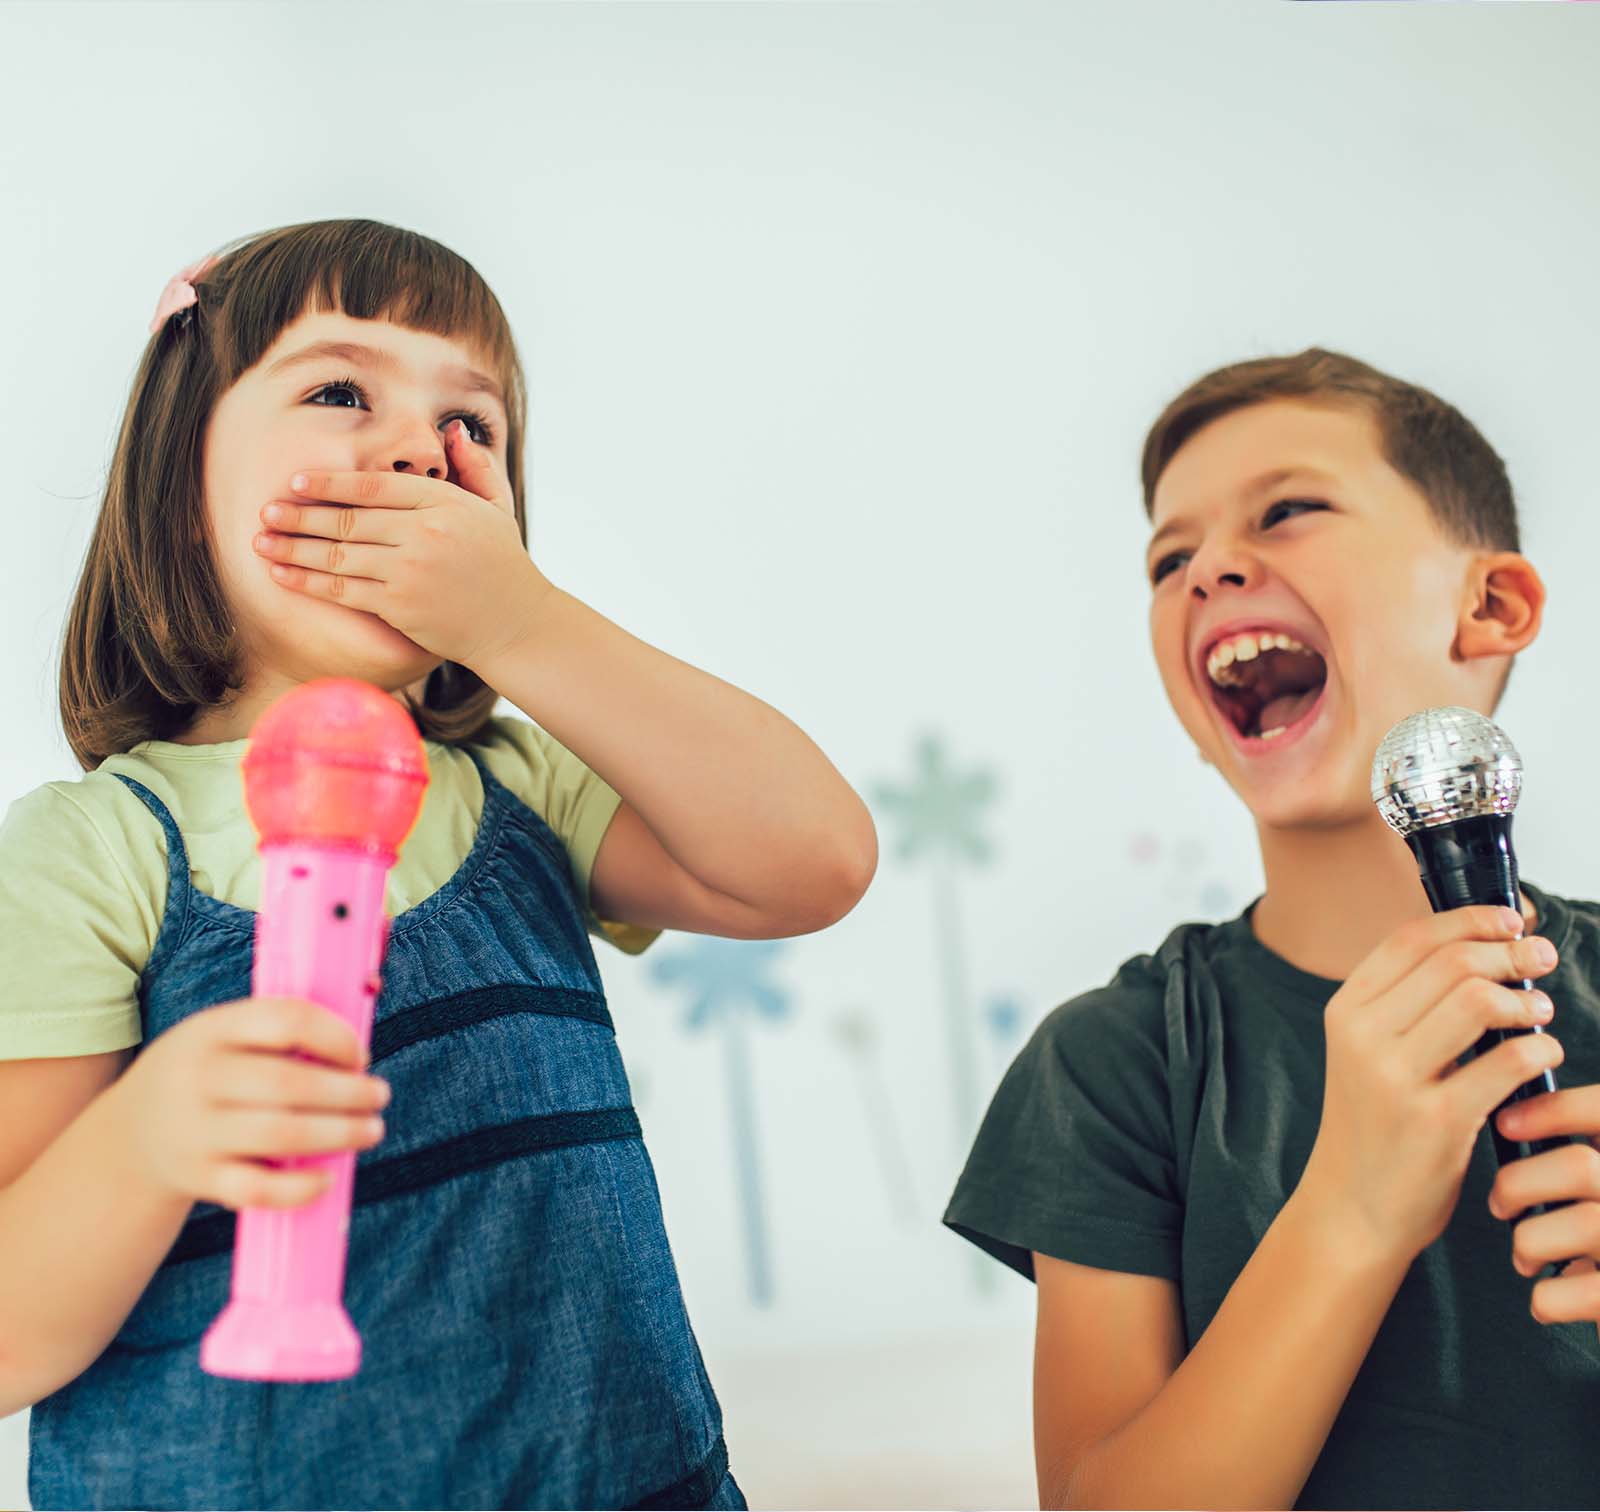 Un băiat și o fată ținând microfoane în timpul cursurilor de Public Speaking.